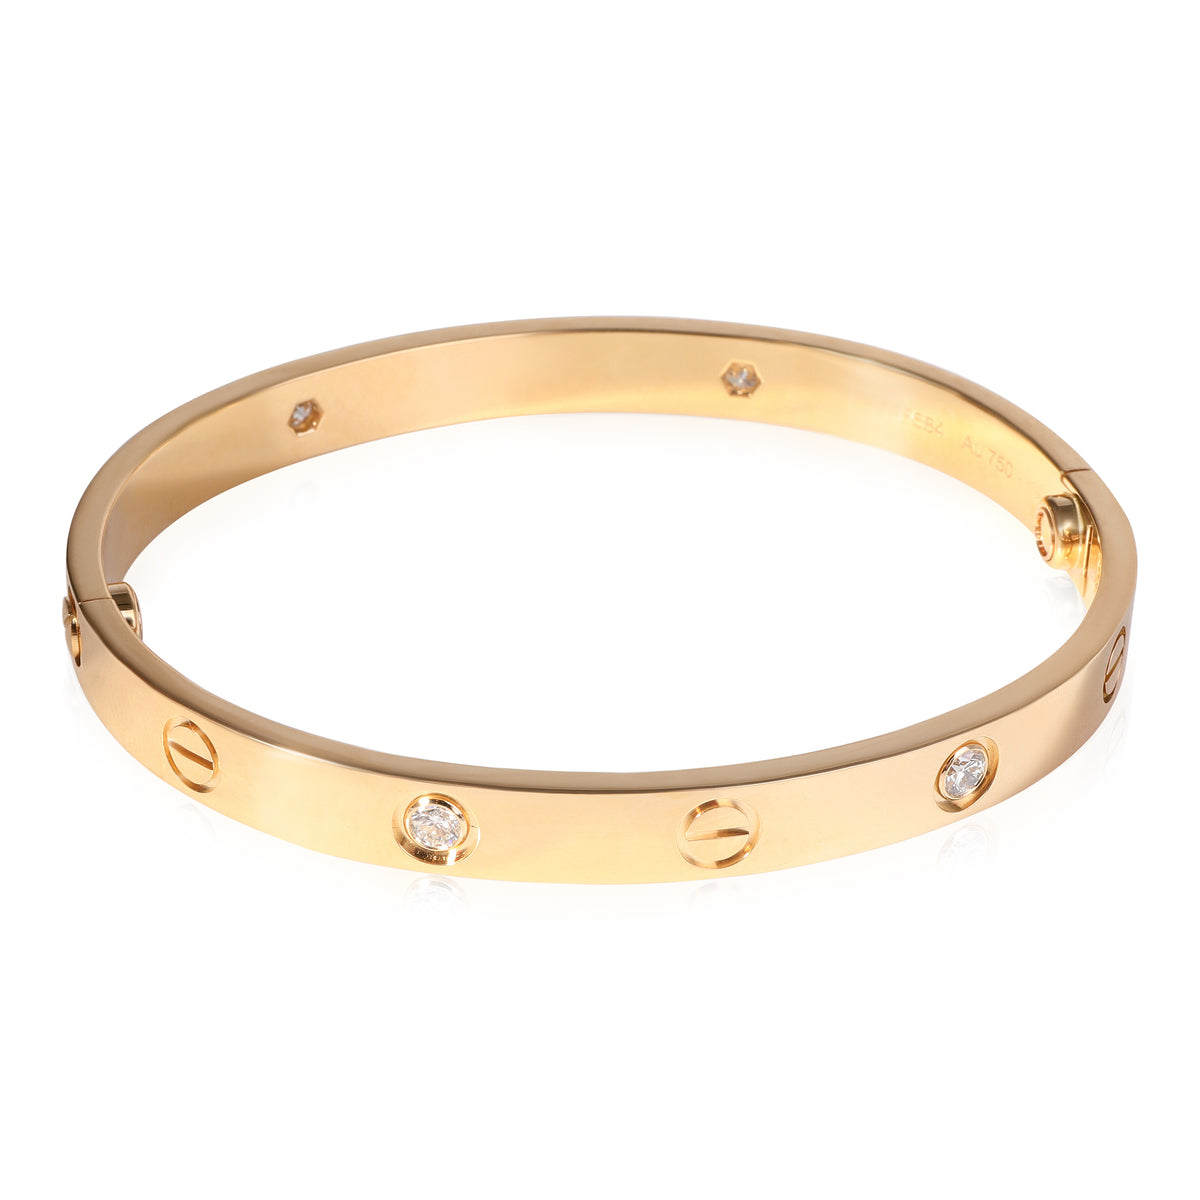 Cartier LOVE Diamond Bracelet in 18k Yellow Gold (Size 17)